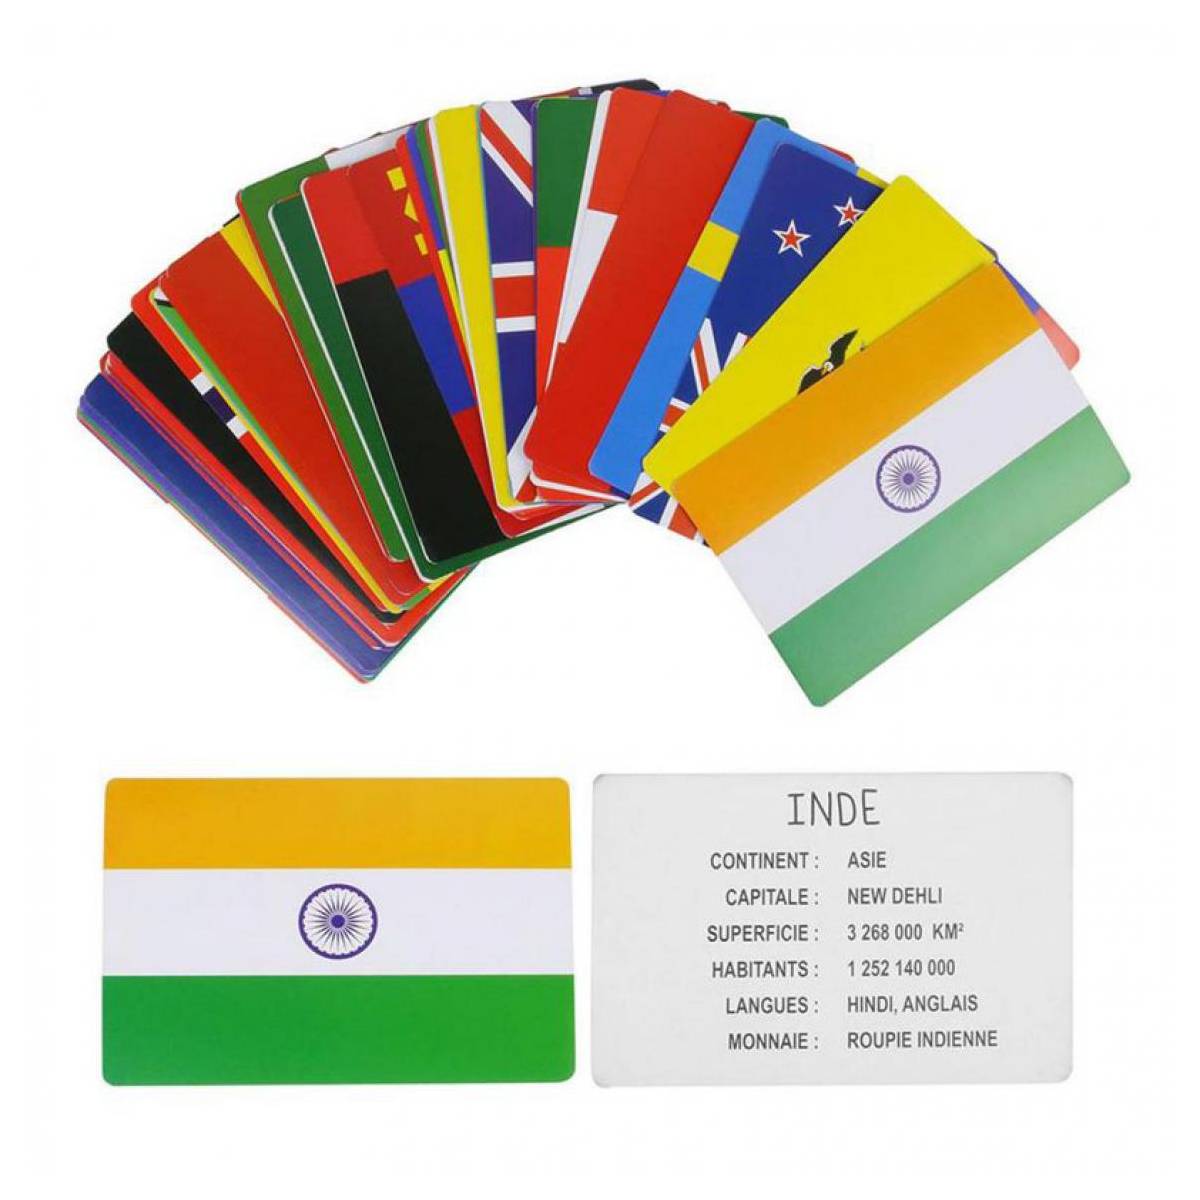 Cartes éducatives drapeaux du Monde - MaxxiDiscount